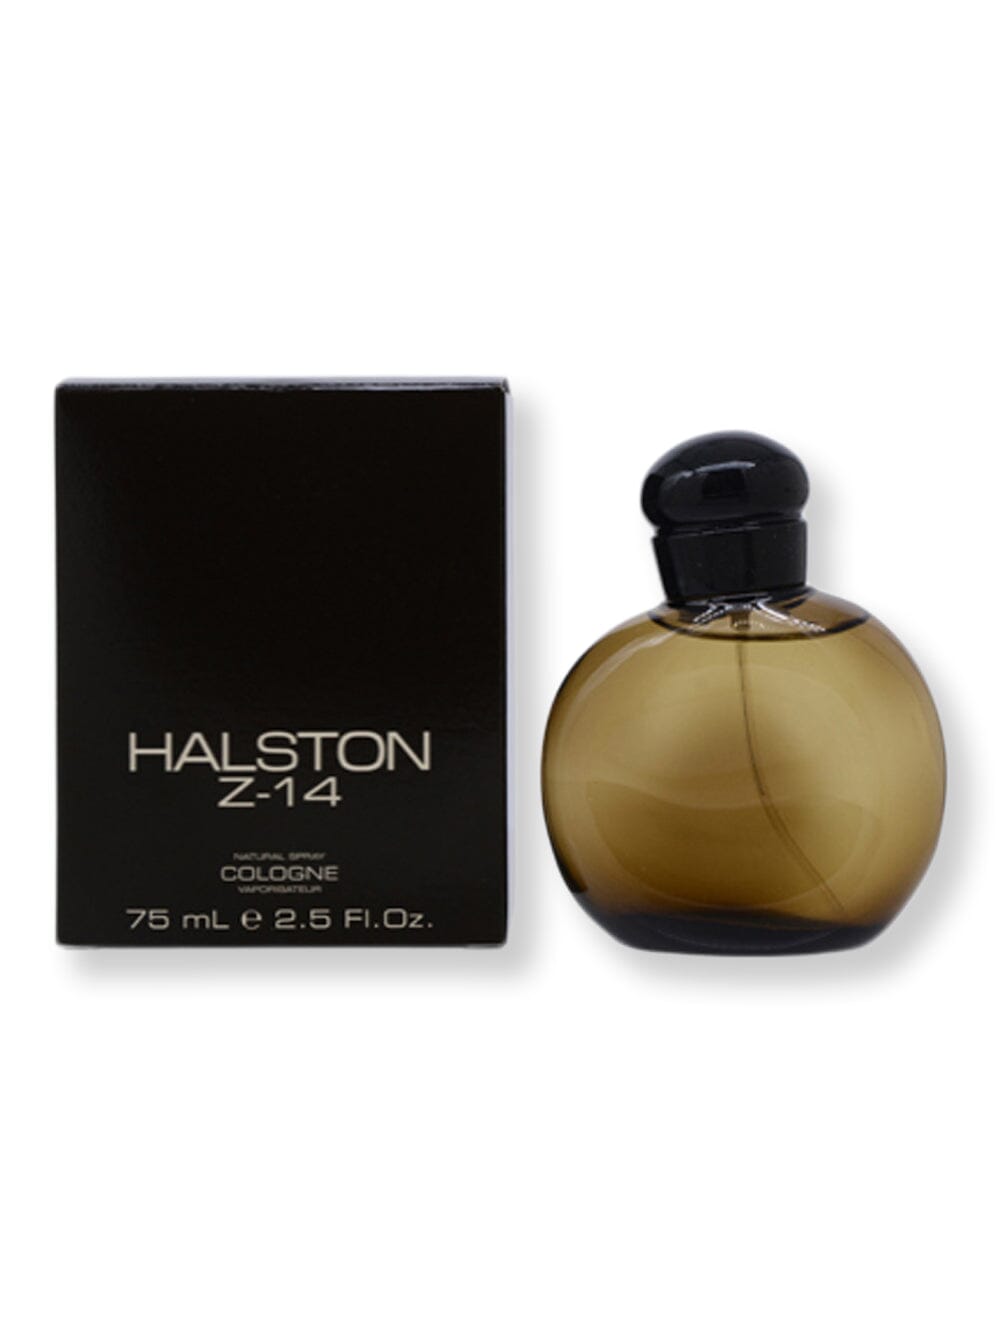 HALSTON HALSTON Z-14 Cologne Spray 2.5 oz Cologne 